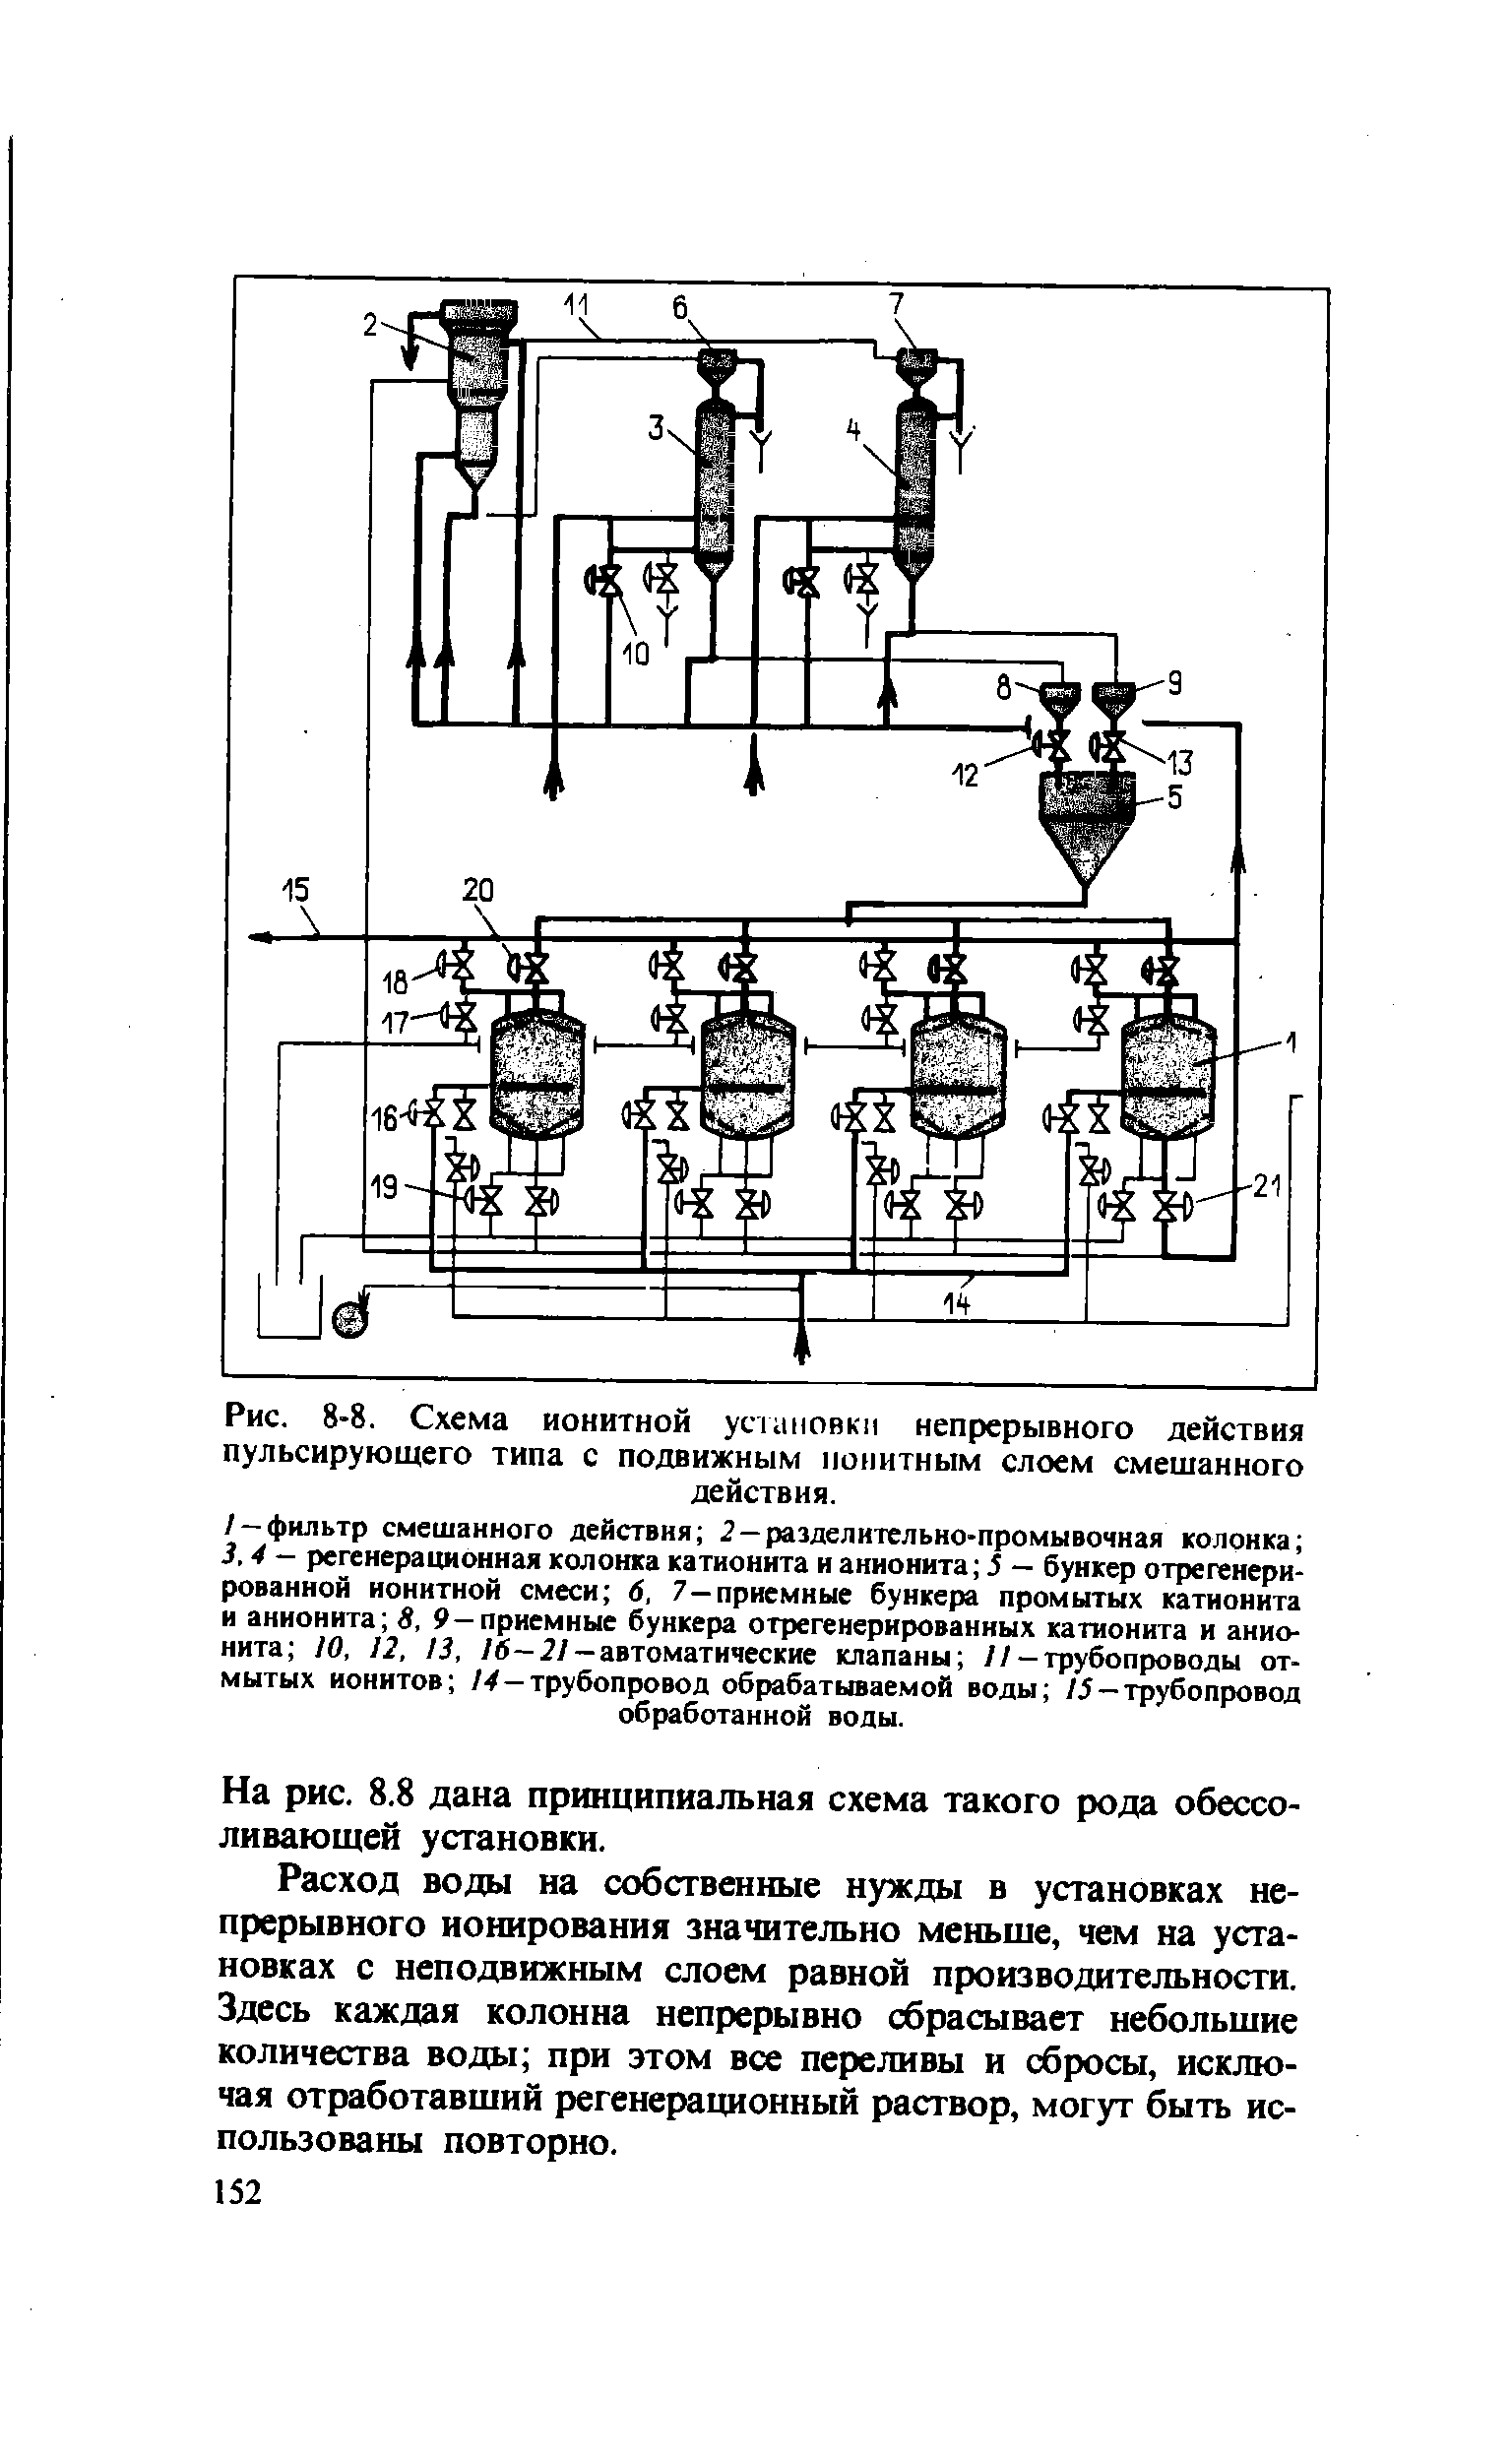 Рис. 8-8. Схема ионитной установки непрерывного действия пульсирующего типа с подвижным понитным слоем смешанного
